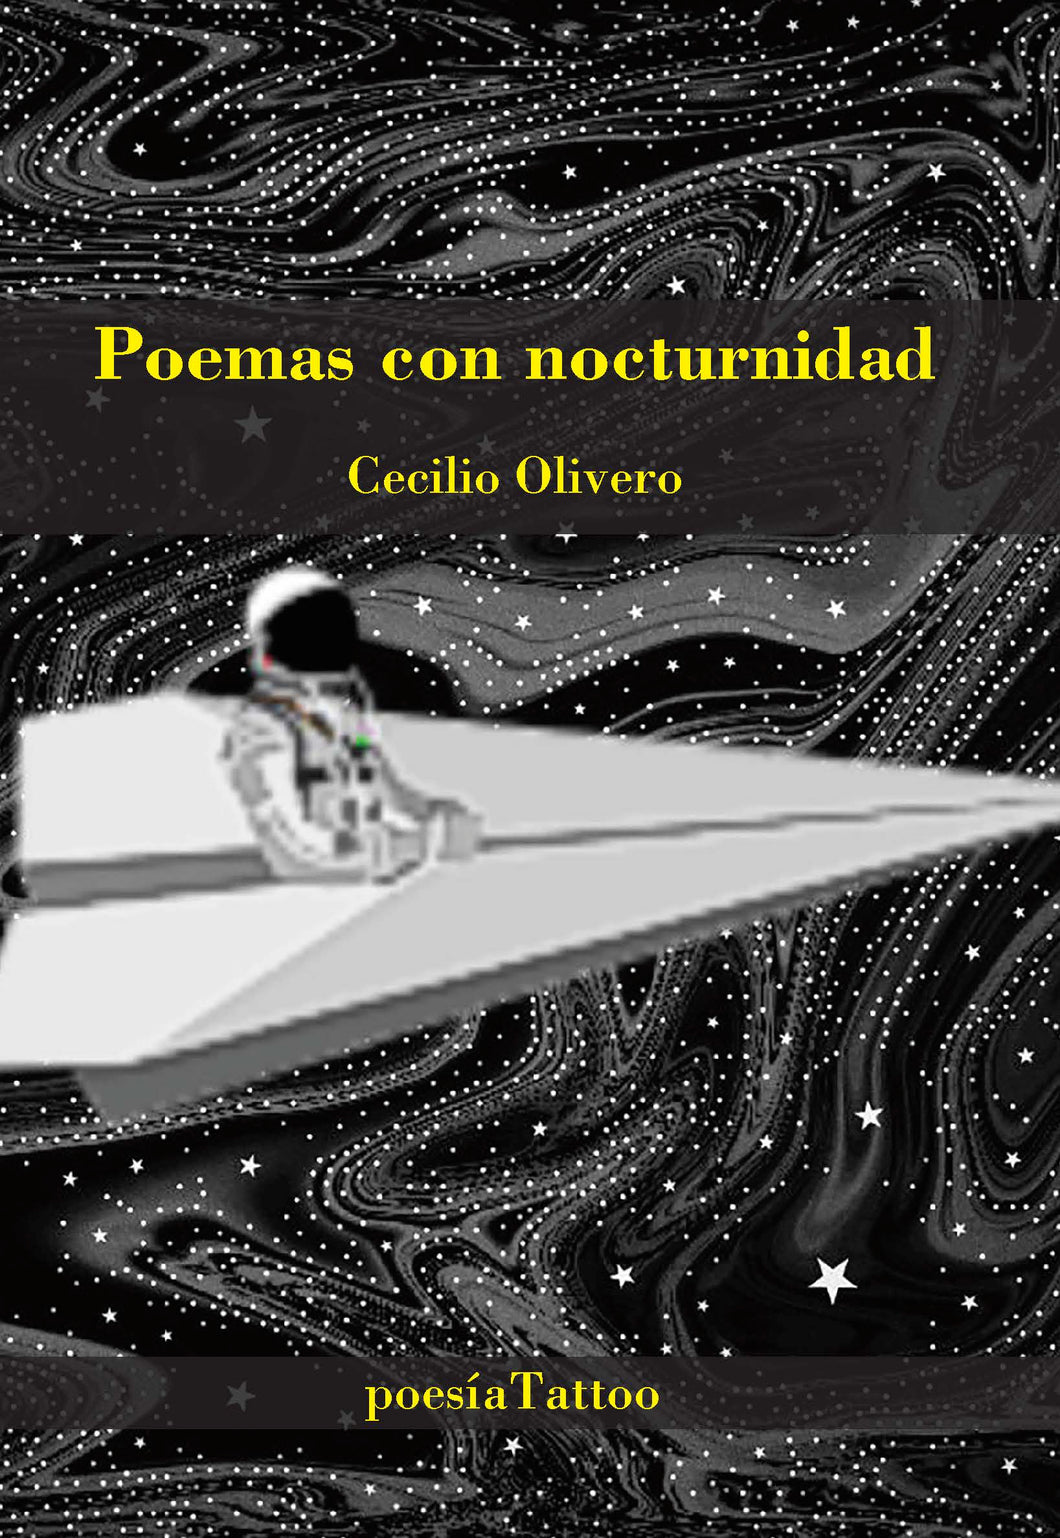 Poemas con nocturnidad, de Cecilio Olivero